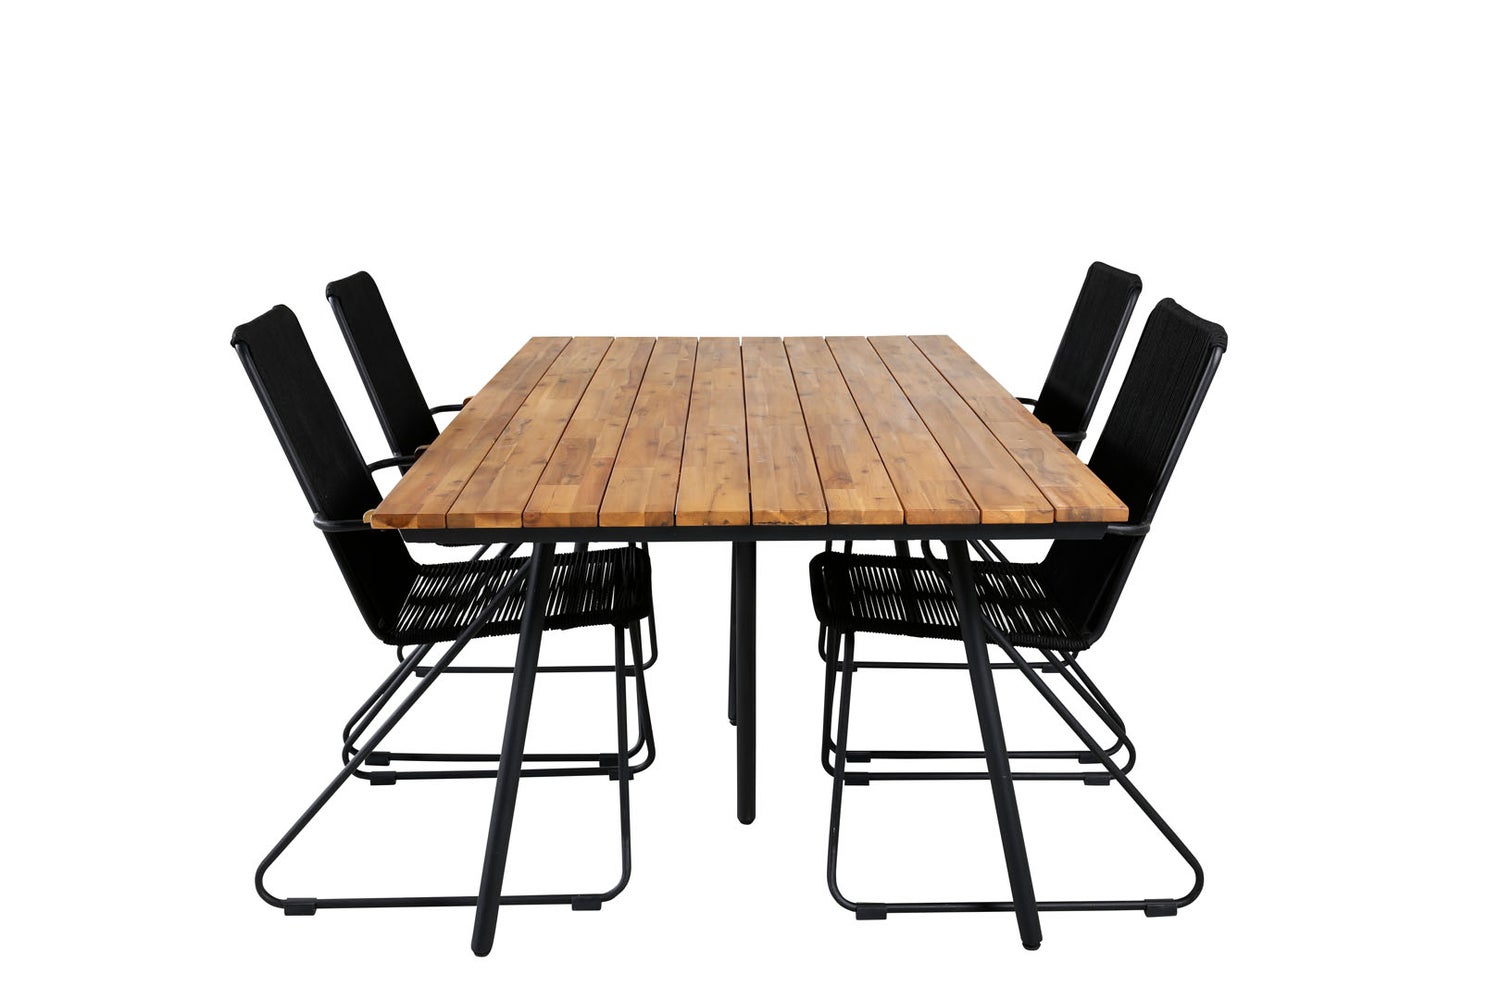 Chan Gartenset Tisch 100x200cm und 4 Stühle Armlehne Bois schwarz, natur.